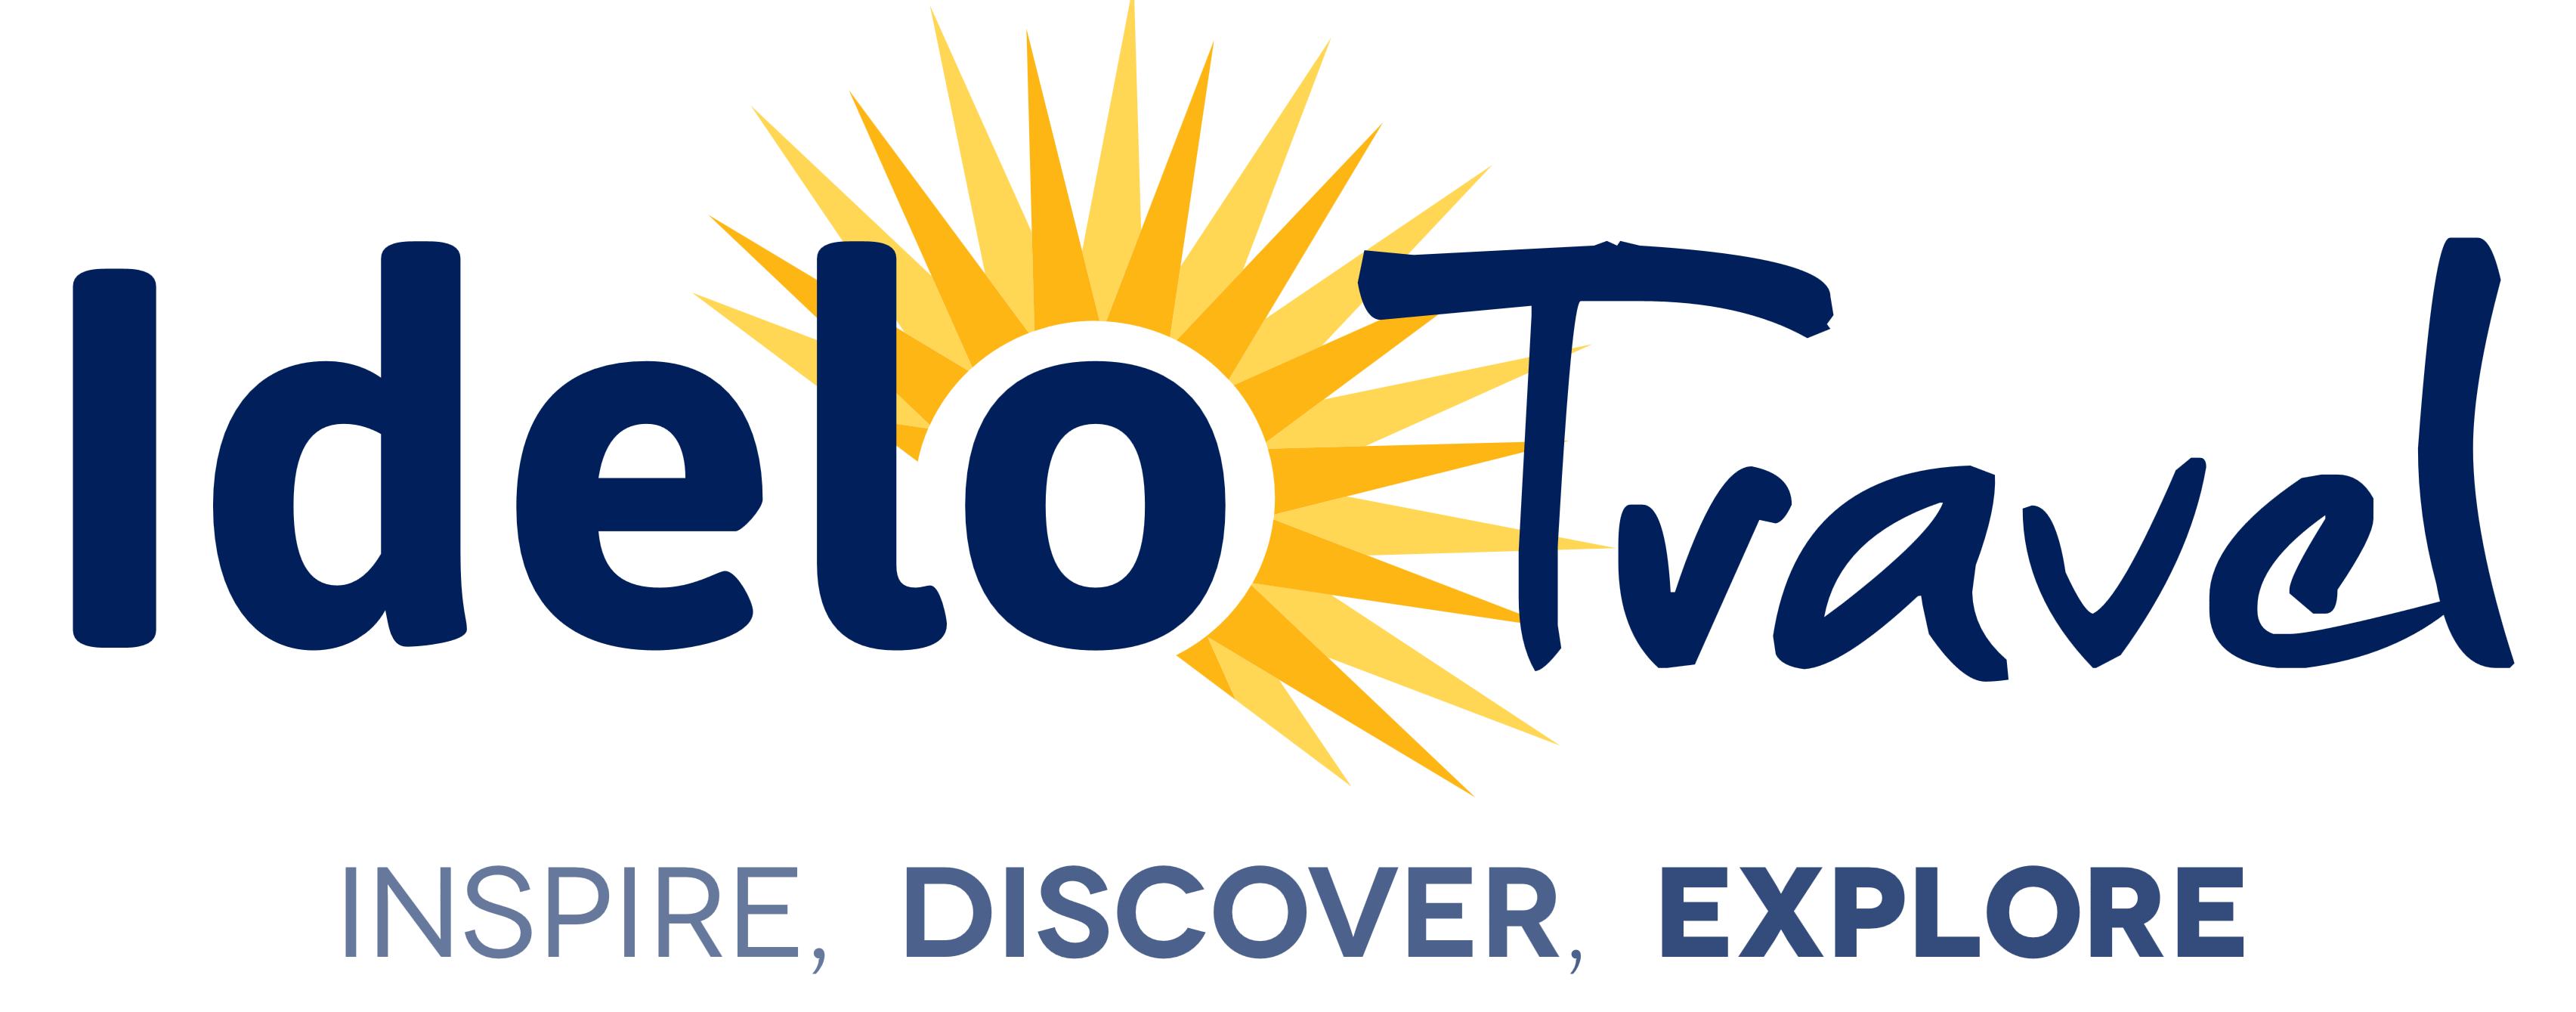 Idelo Travel â€“ Logos Download